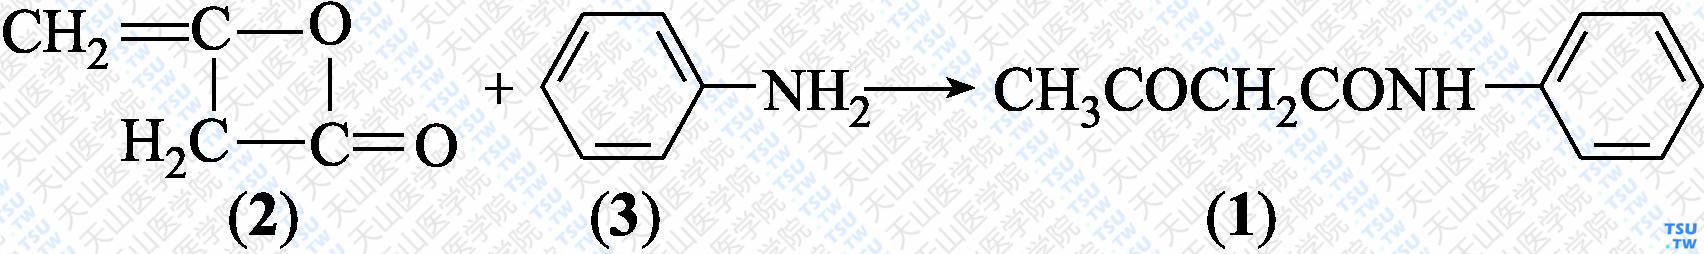 3-氧代-<i>N</i>-苯基丁酰胺（分子式：C<sub>10</sub>H<sub>11</sub>NO<sub>2</sub>）的合成方法路线及其结构式